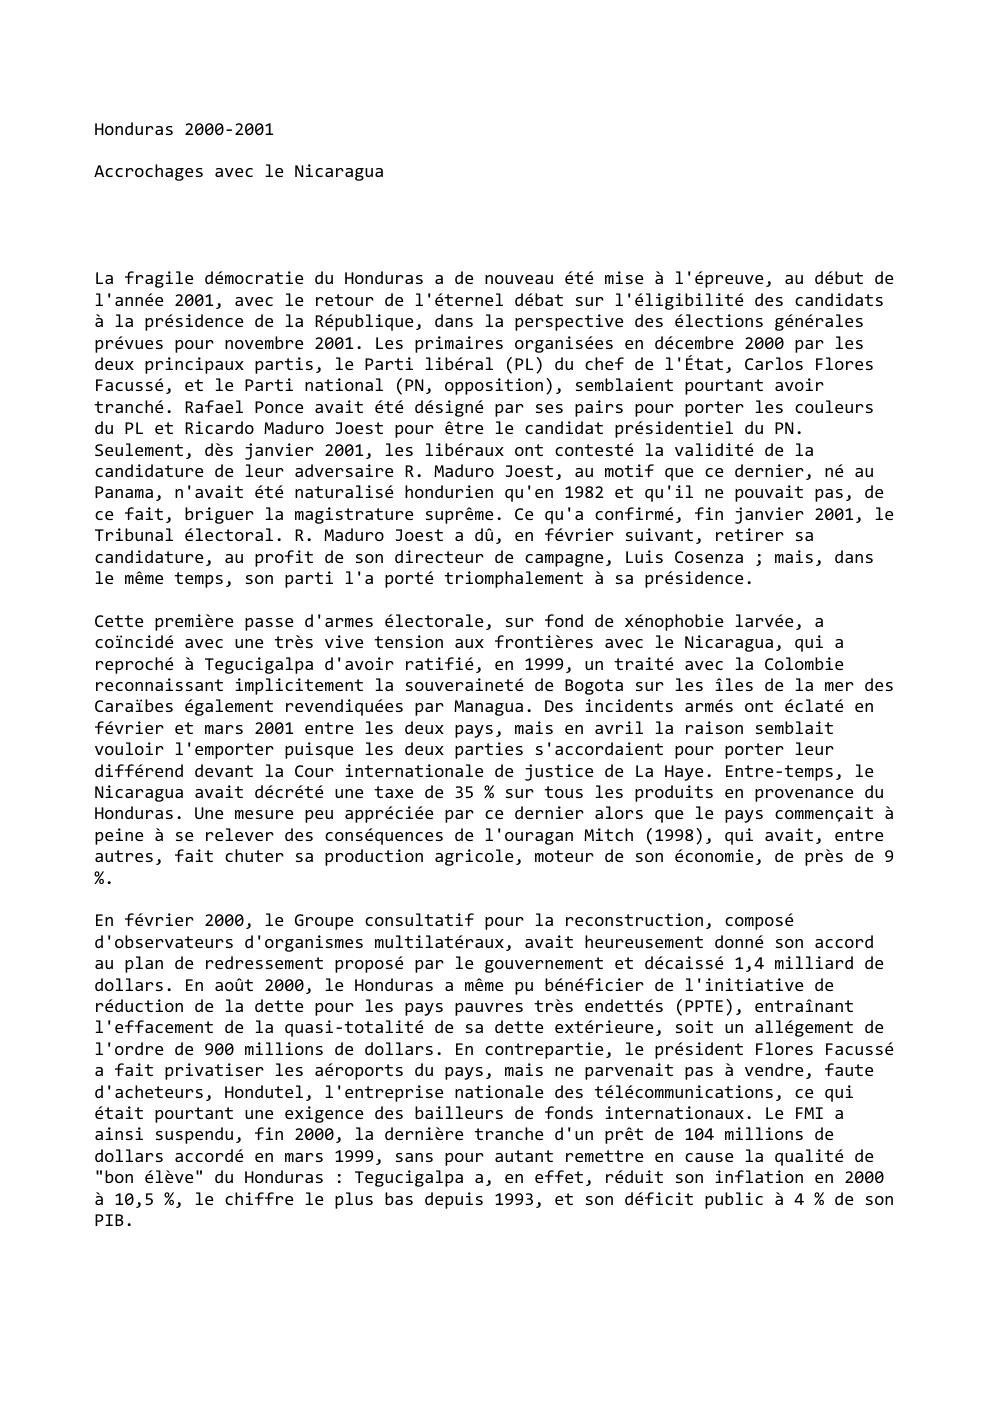 Prévisualisation du document Honduras 2000-2001
Accrochages avec le Nicaragua

La fragile démocratie du Honduras a de nouveau été mise à l'épreuve, au début...